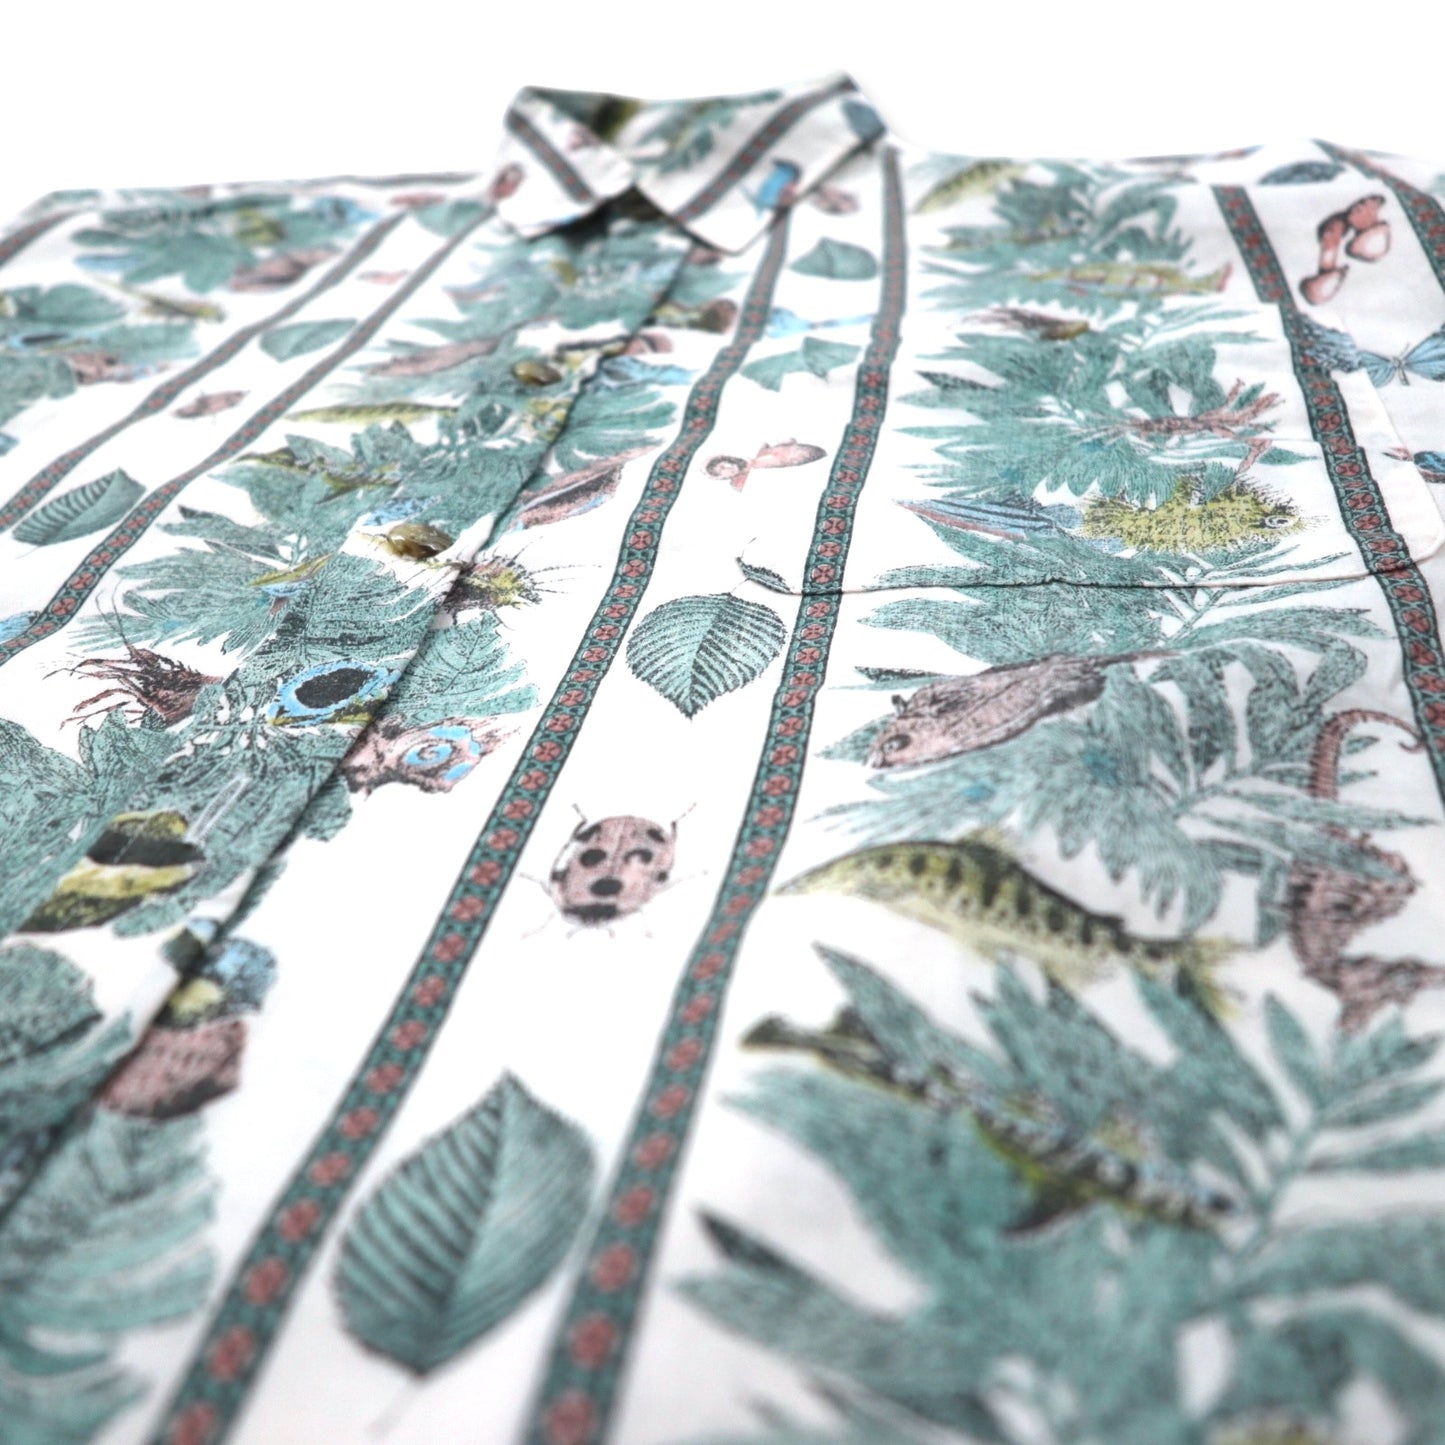 FUSION 総柄 ドレスシャツ L ホワイト ストライプ コットン 魚 虫 ボタニカル 日本製